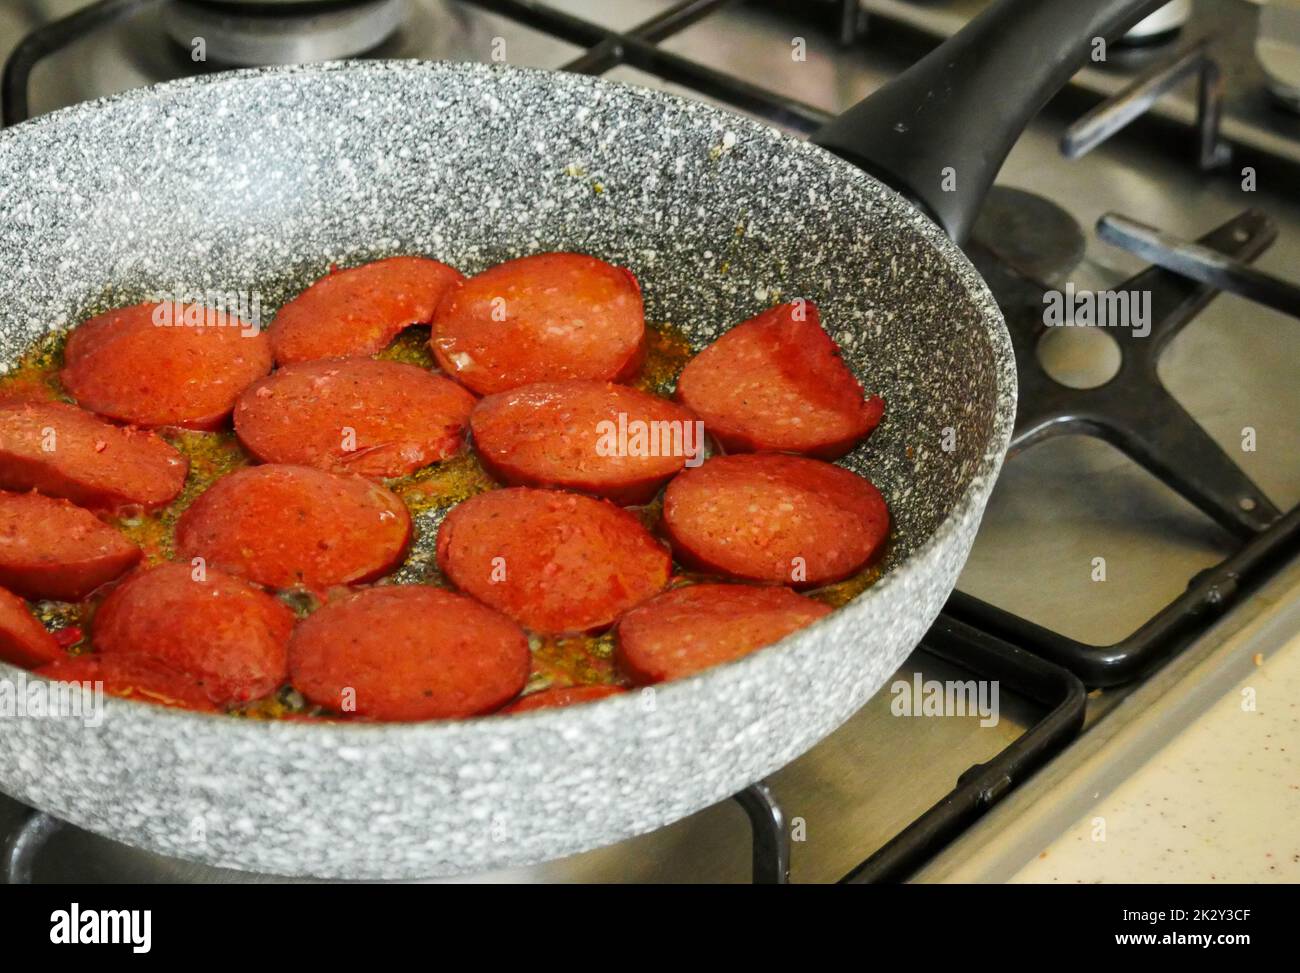 Salsiccia di manzo fritta in padella in stile turco con fette grandi, salsiccia di manzo calda è cucinata in padella Foto Stock